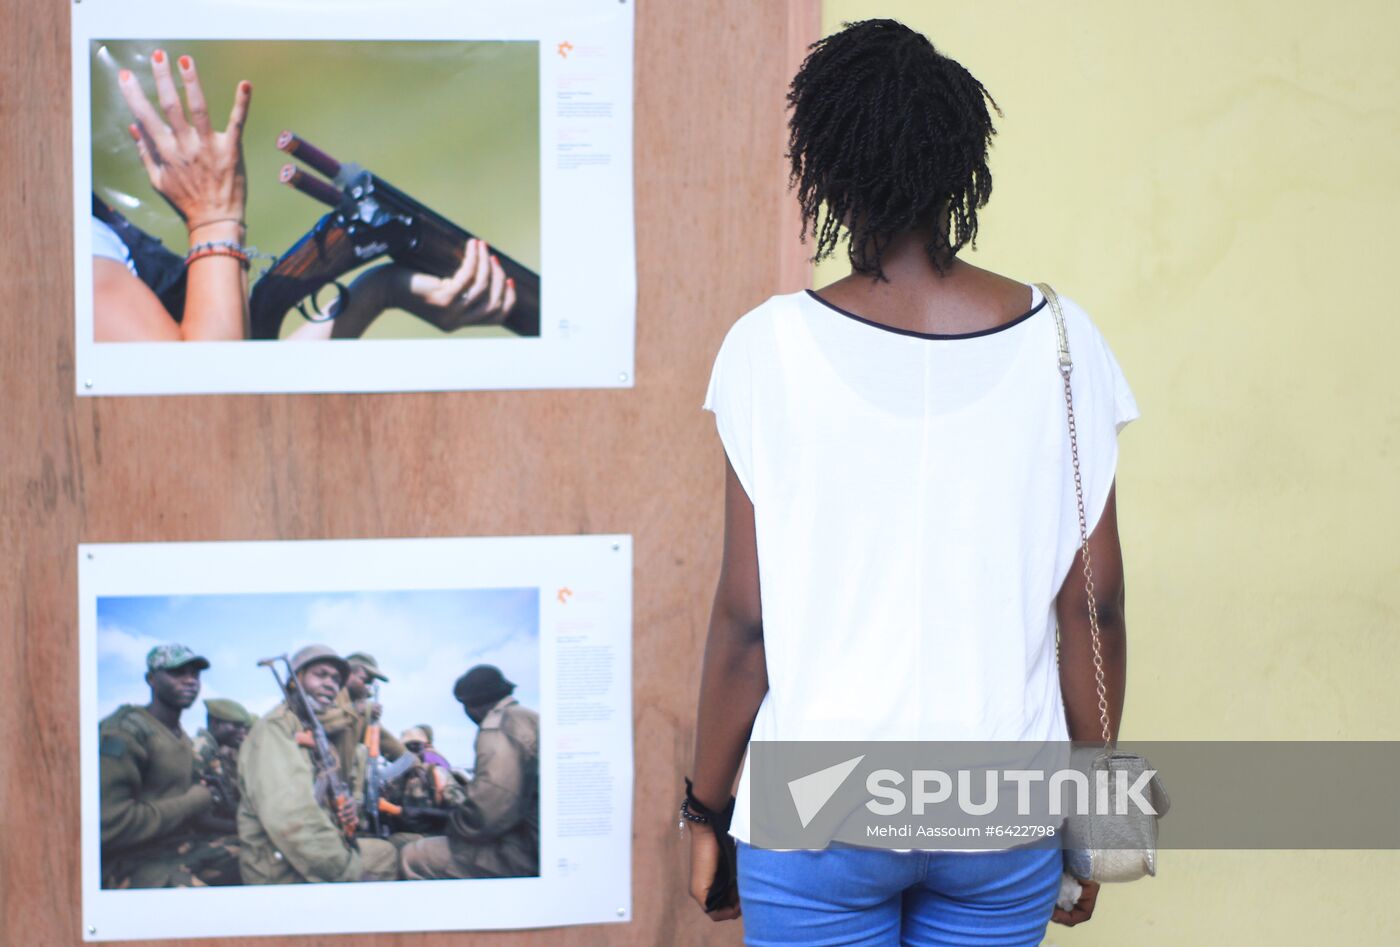 Congo Stenin Photo Contest